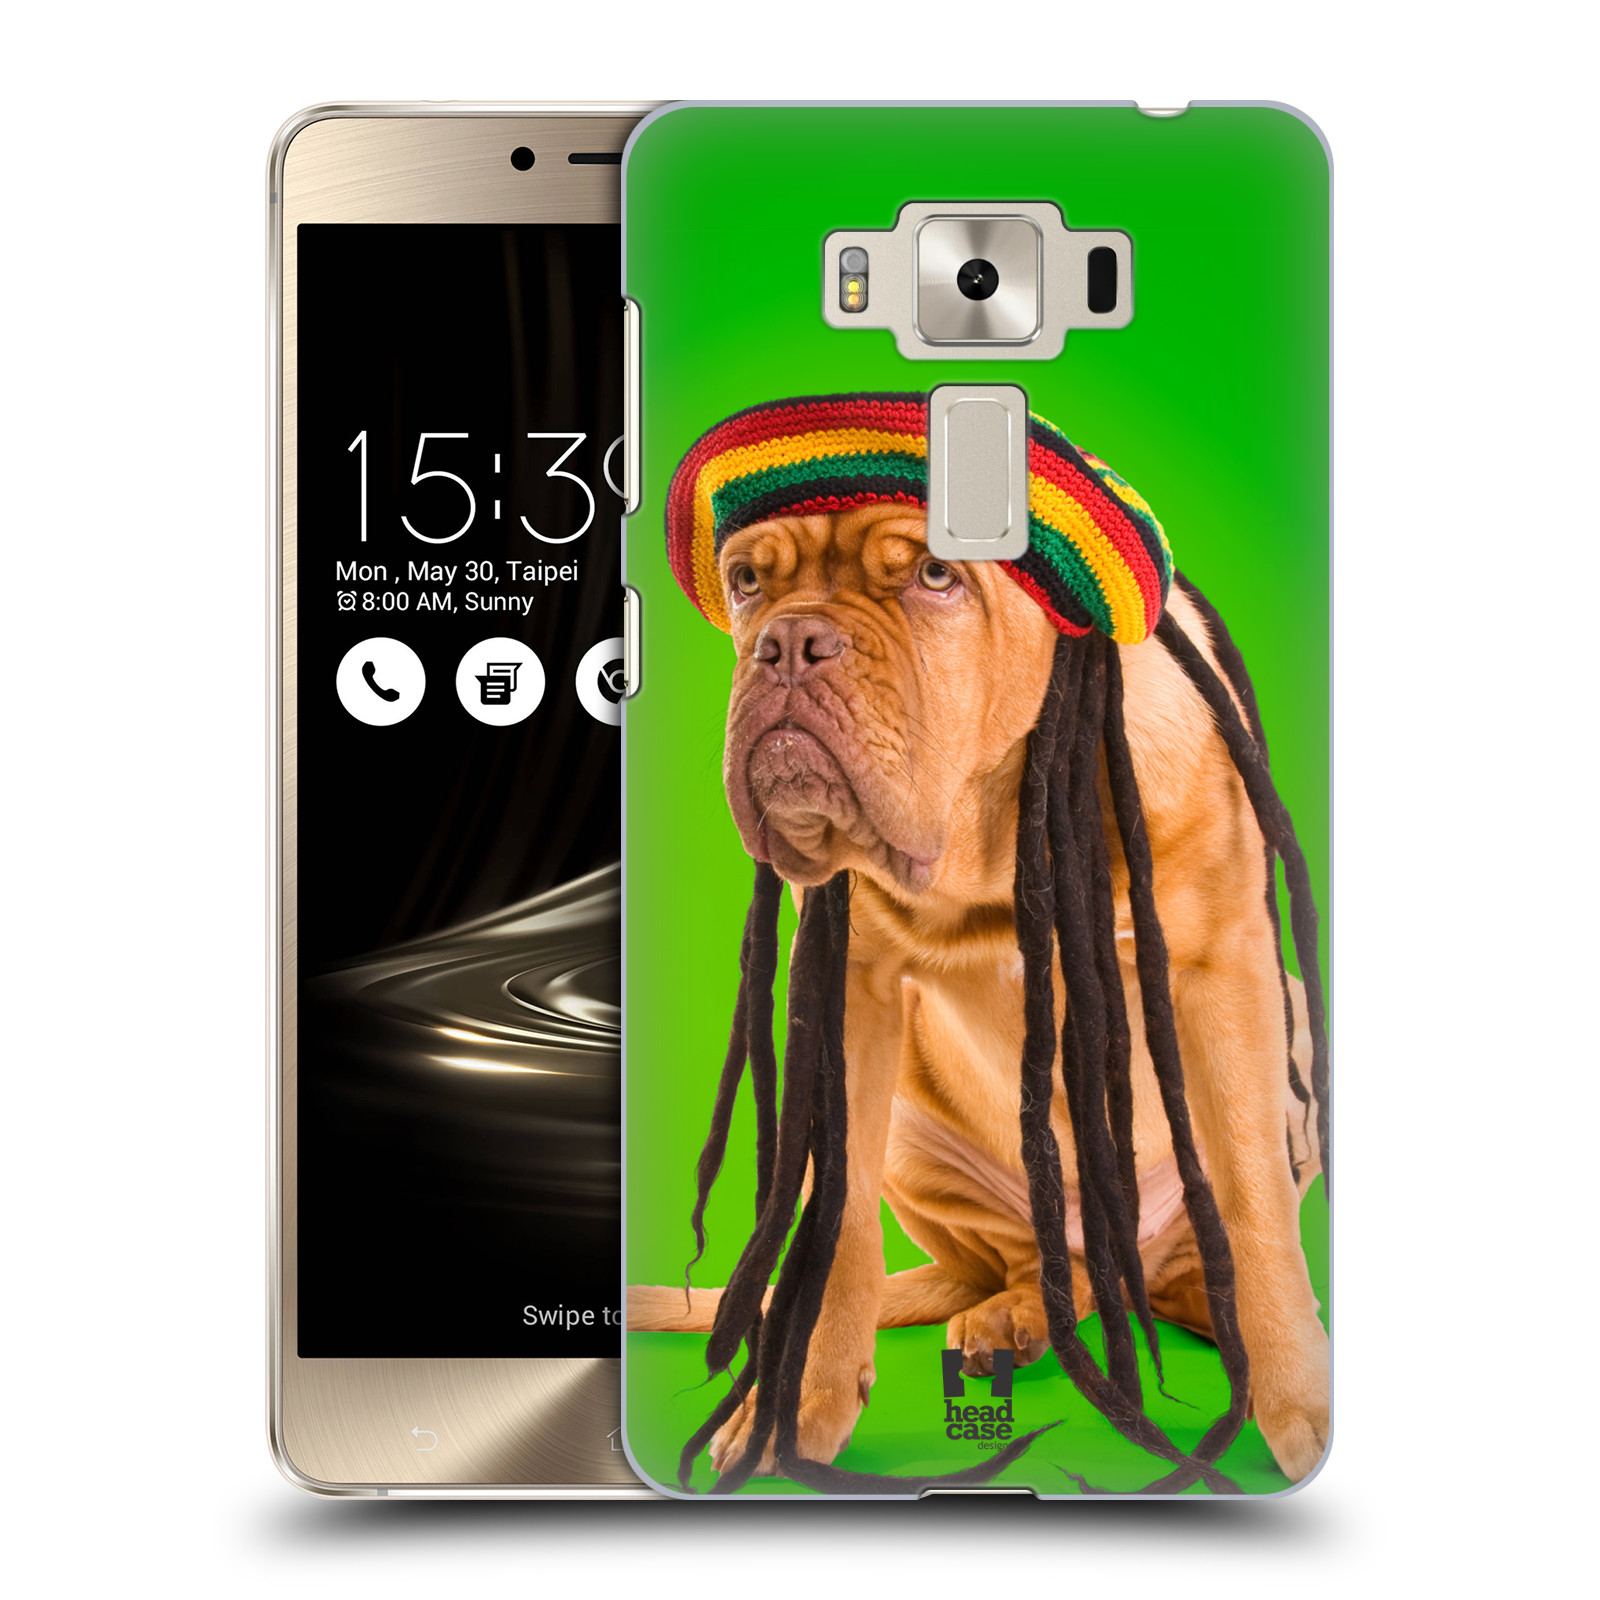 HEAD CASE plastový obal na mobil Asus Zenfone 3 DELUXE ZS550KL vzor Legrační zvířátka pejsek dredy Rastafarián